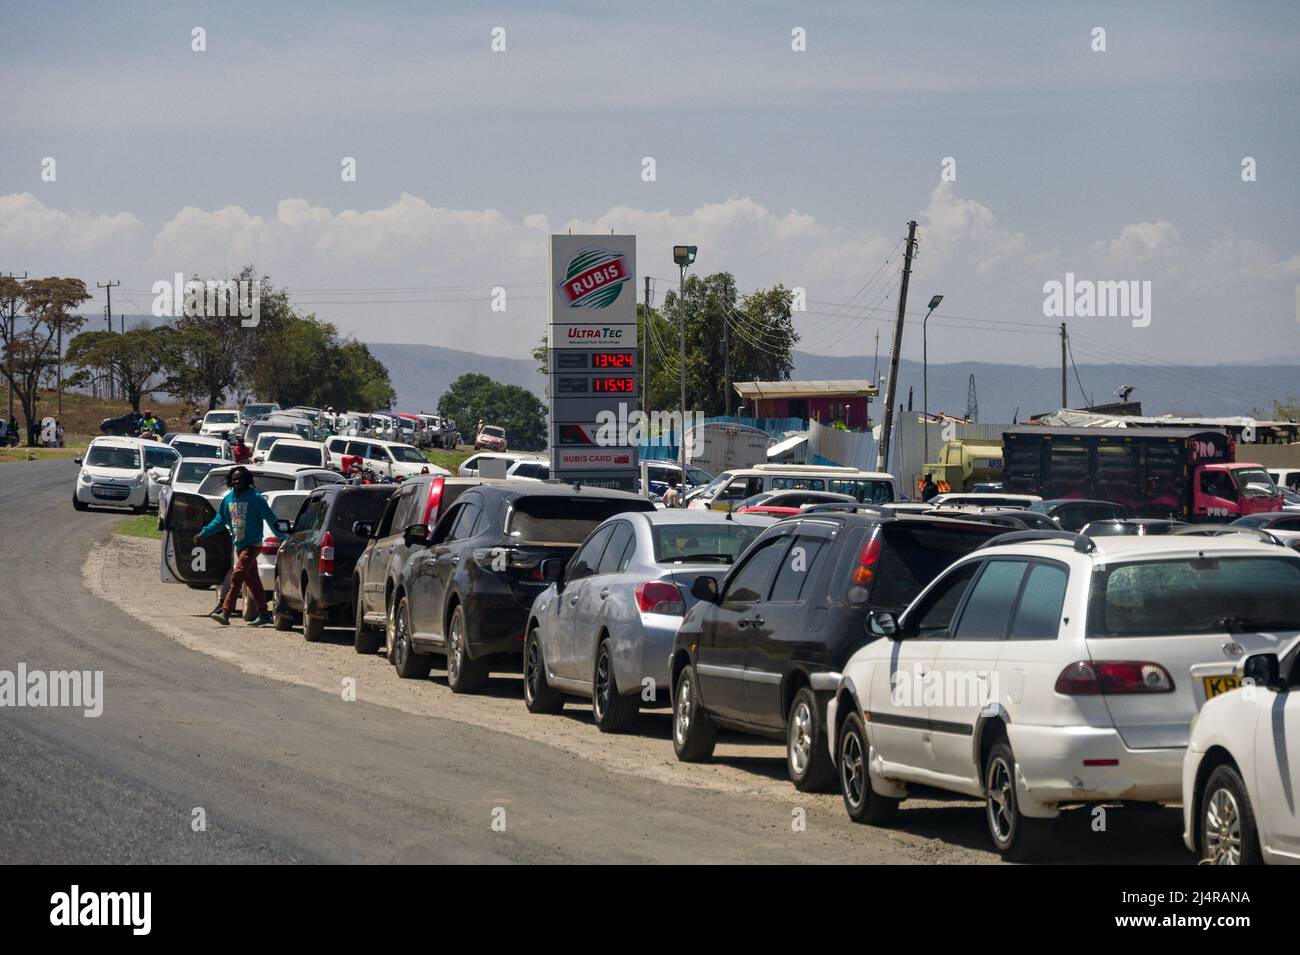 Des lignes de véhicules avec des automobilistes faisant la queue pour entrer dans une station-service RUBIS en raison de pénuries de carburant au Kenya, en Afrique de l'est Banque D'Images